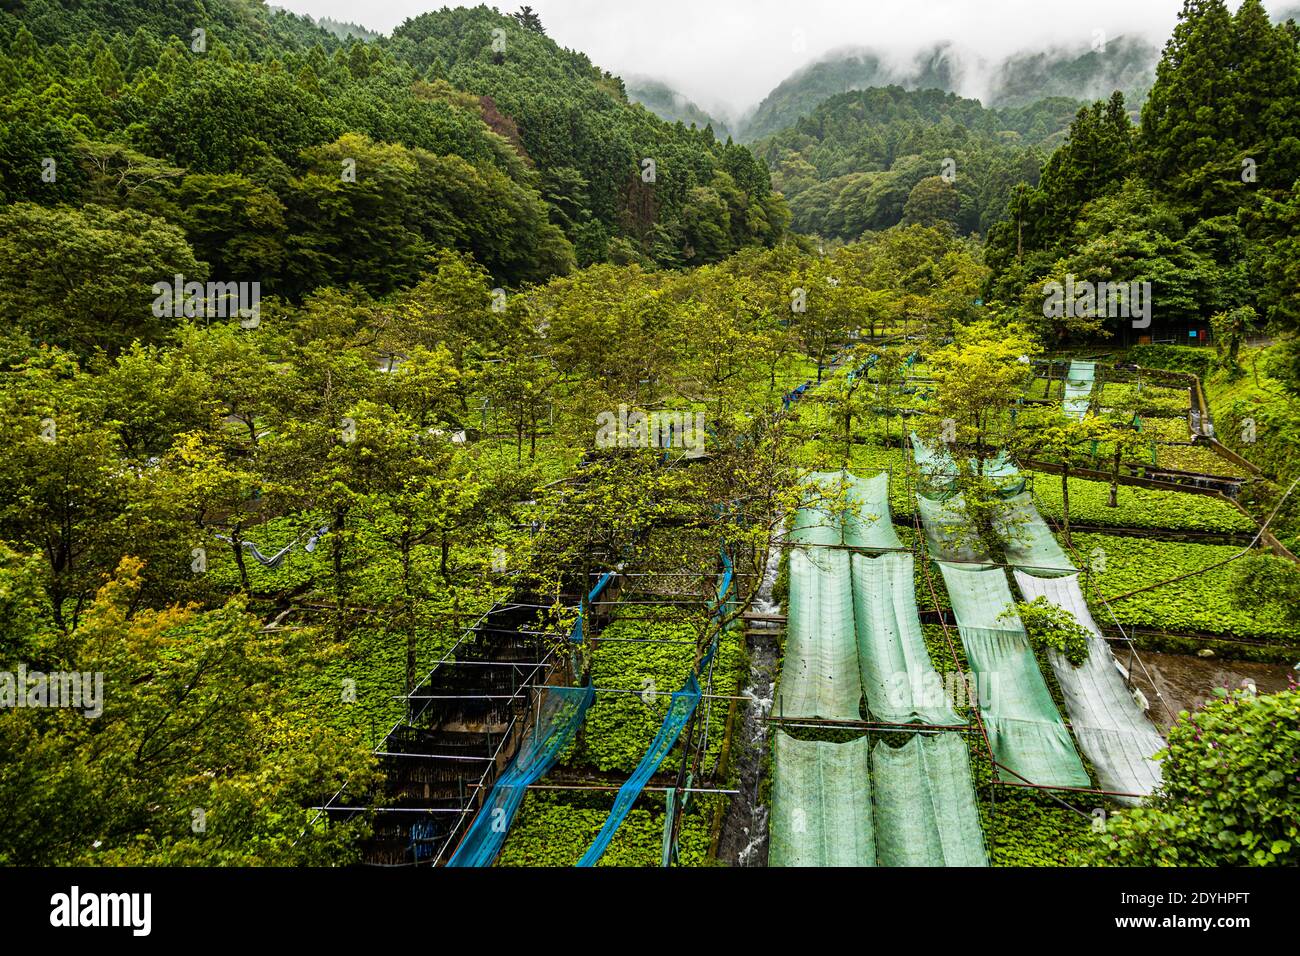 Die Wasabi-Felder in Izu (Japan) sind schmal und erstrecken sich entlang der sanften Hänge, die dem Flusslauf folgen. Die Pflanzen wachsen sehr langsam und der Anbau von Wasabi ist sehr arbeitsintensiv Stockfoto